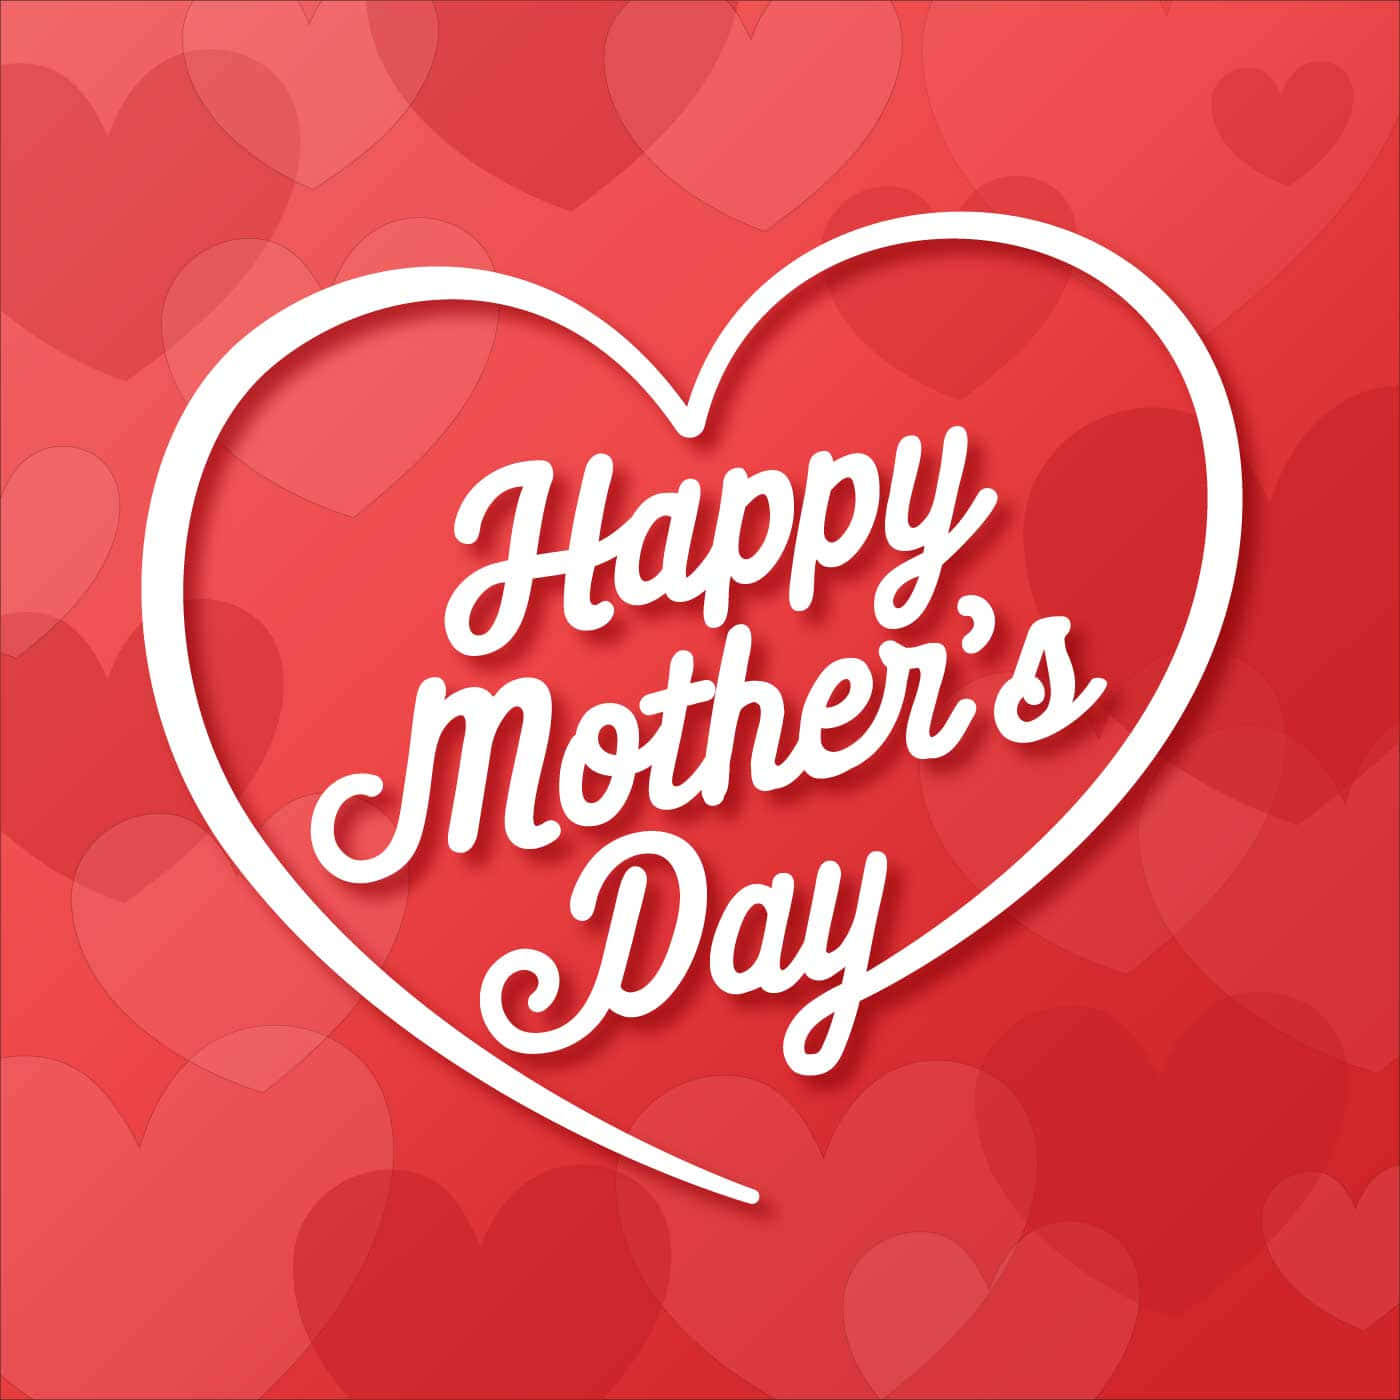 Grattispå Mors Dag Till Alla Älskande Mammor Där Ute!